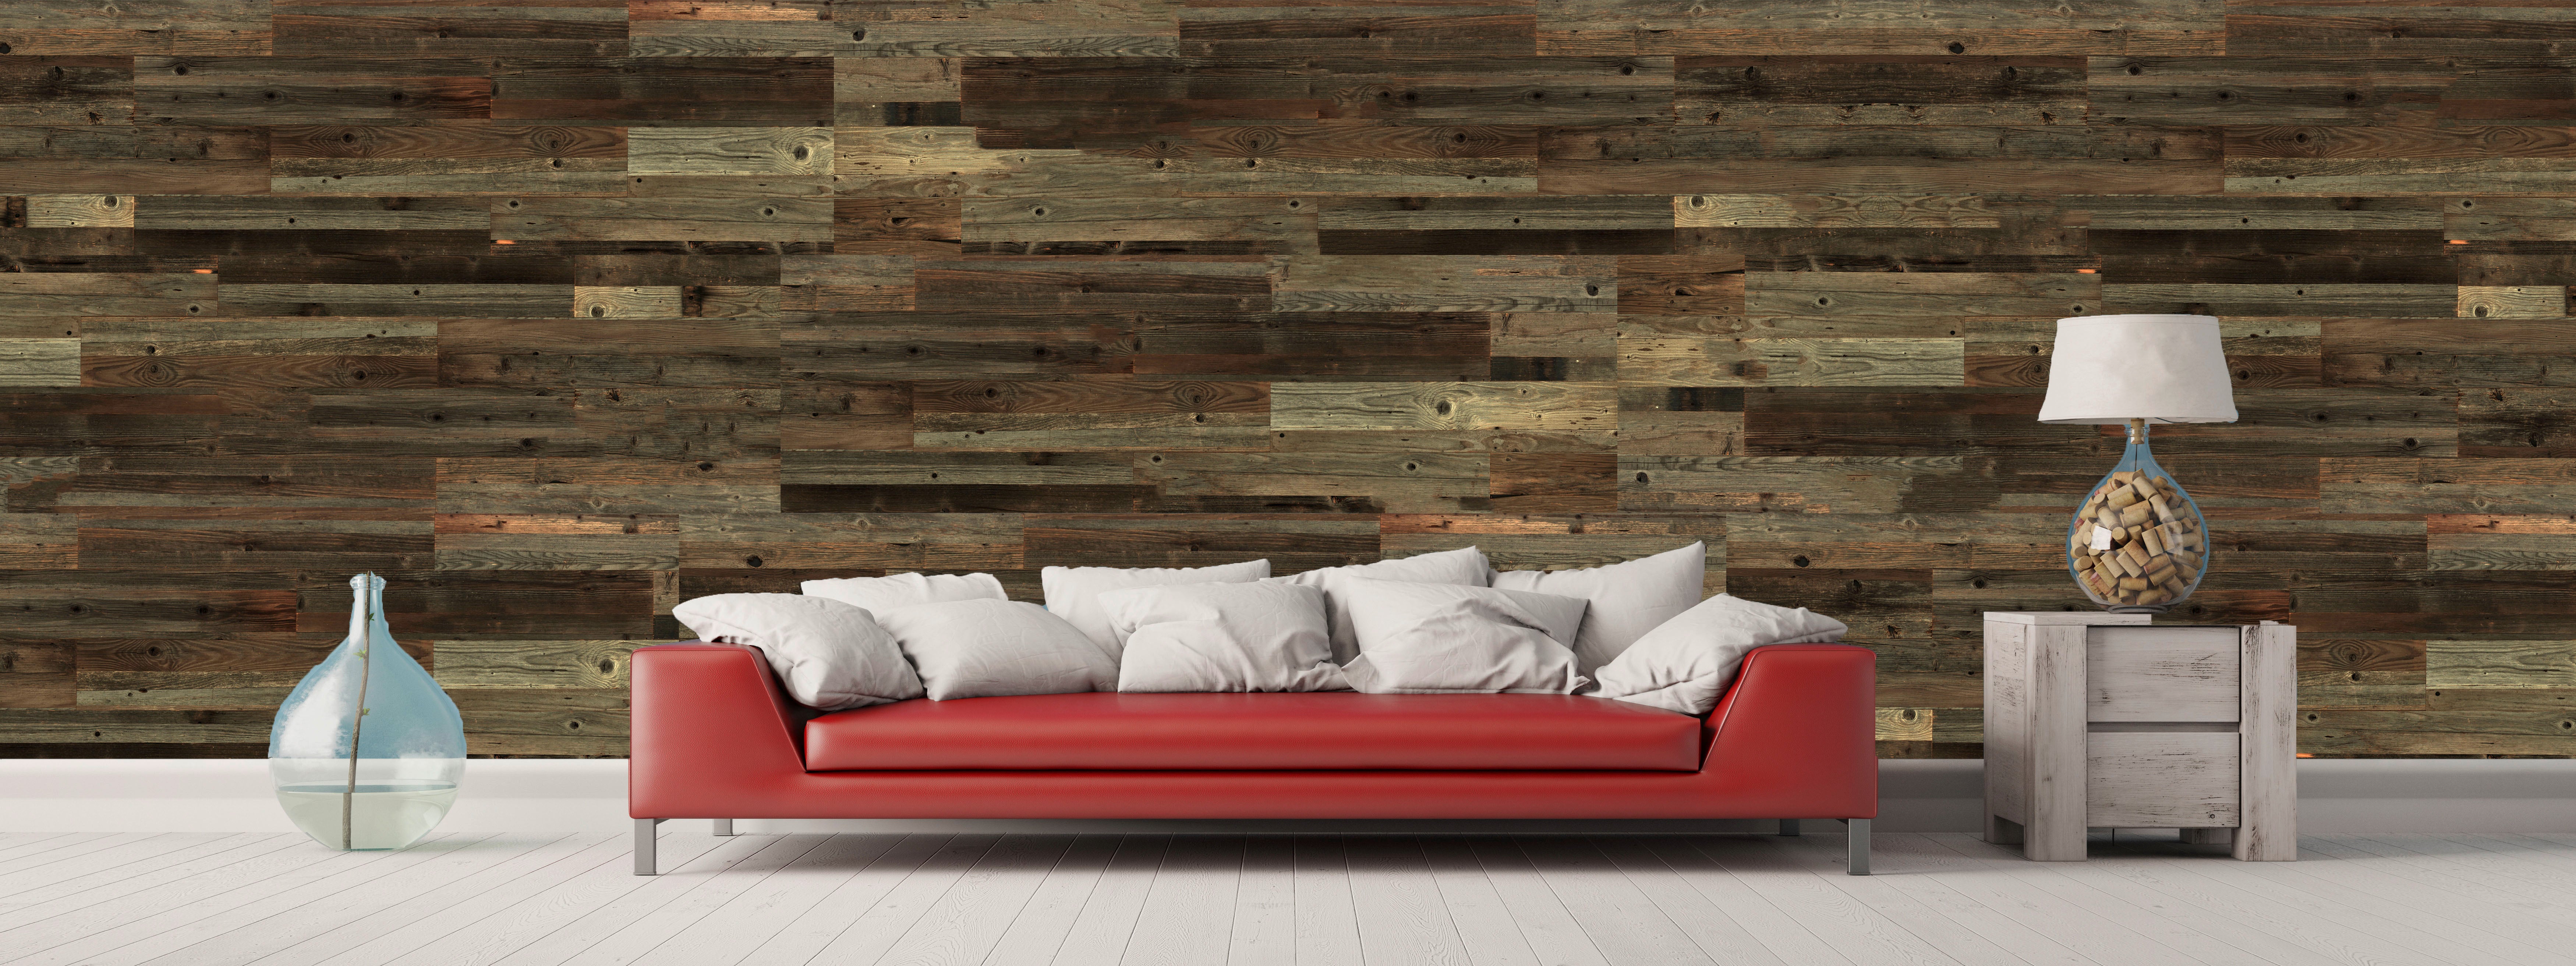 Rotes Sofa mit weißen Polstern, Wand verkleidet mit braunem Altholz